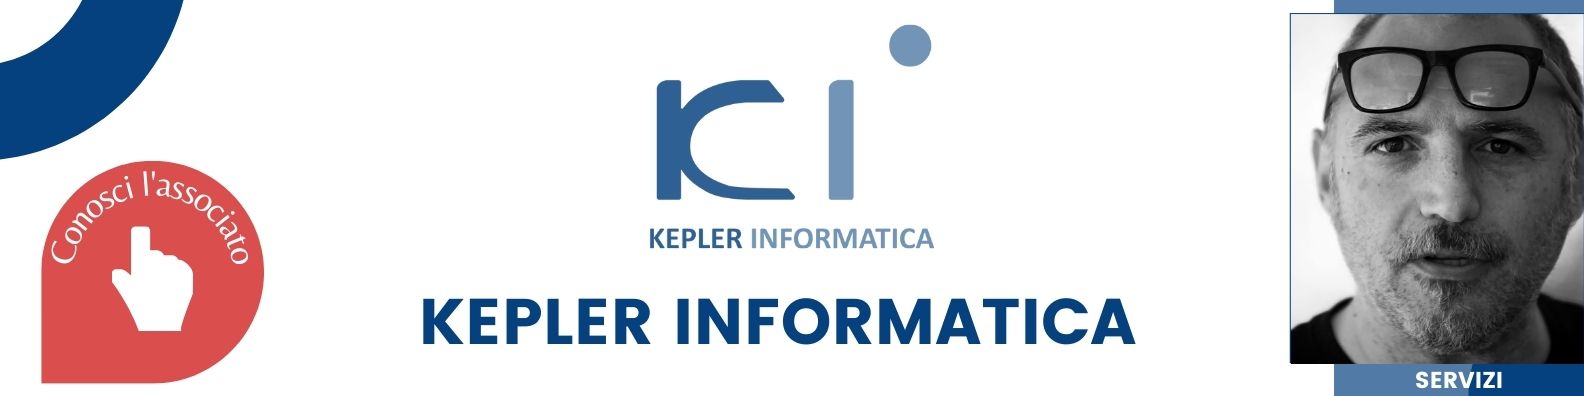 Kepler Informatica.jpg